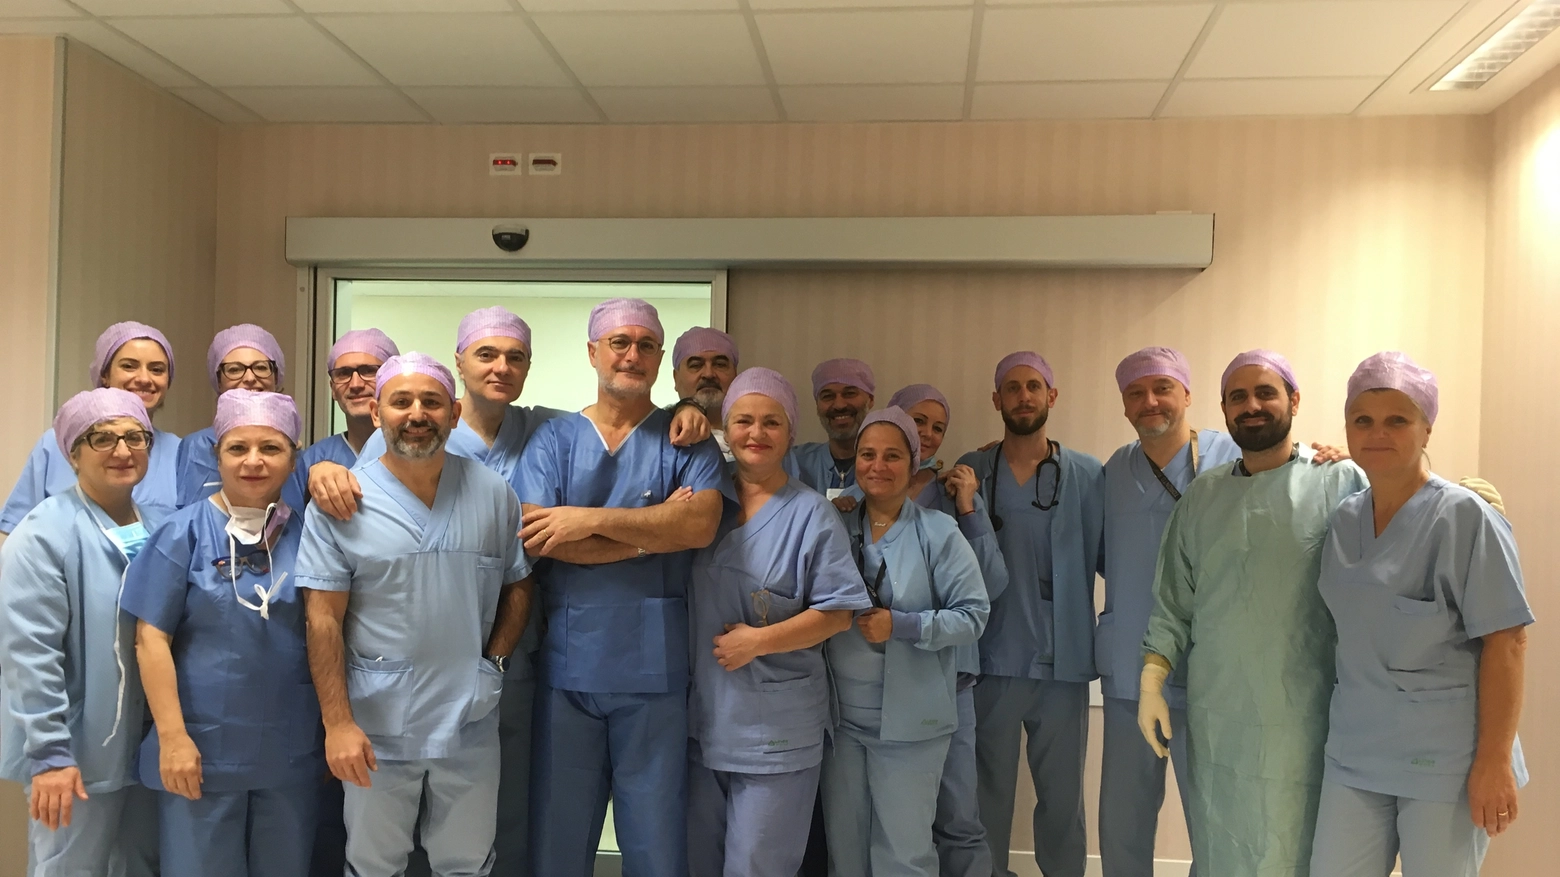 L'equipe dell'Unità Operativa di Neurochirurgia del Bufalini